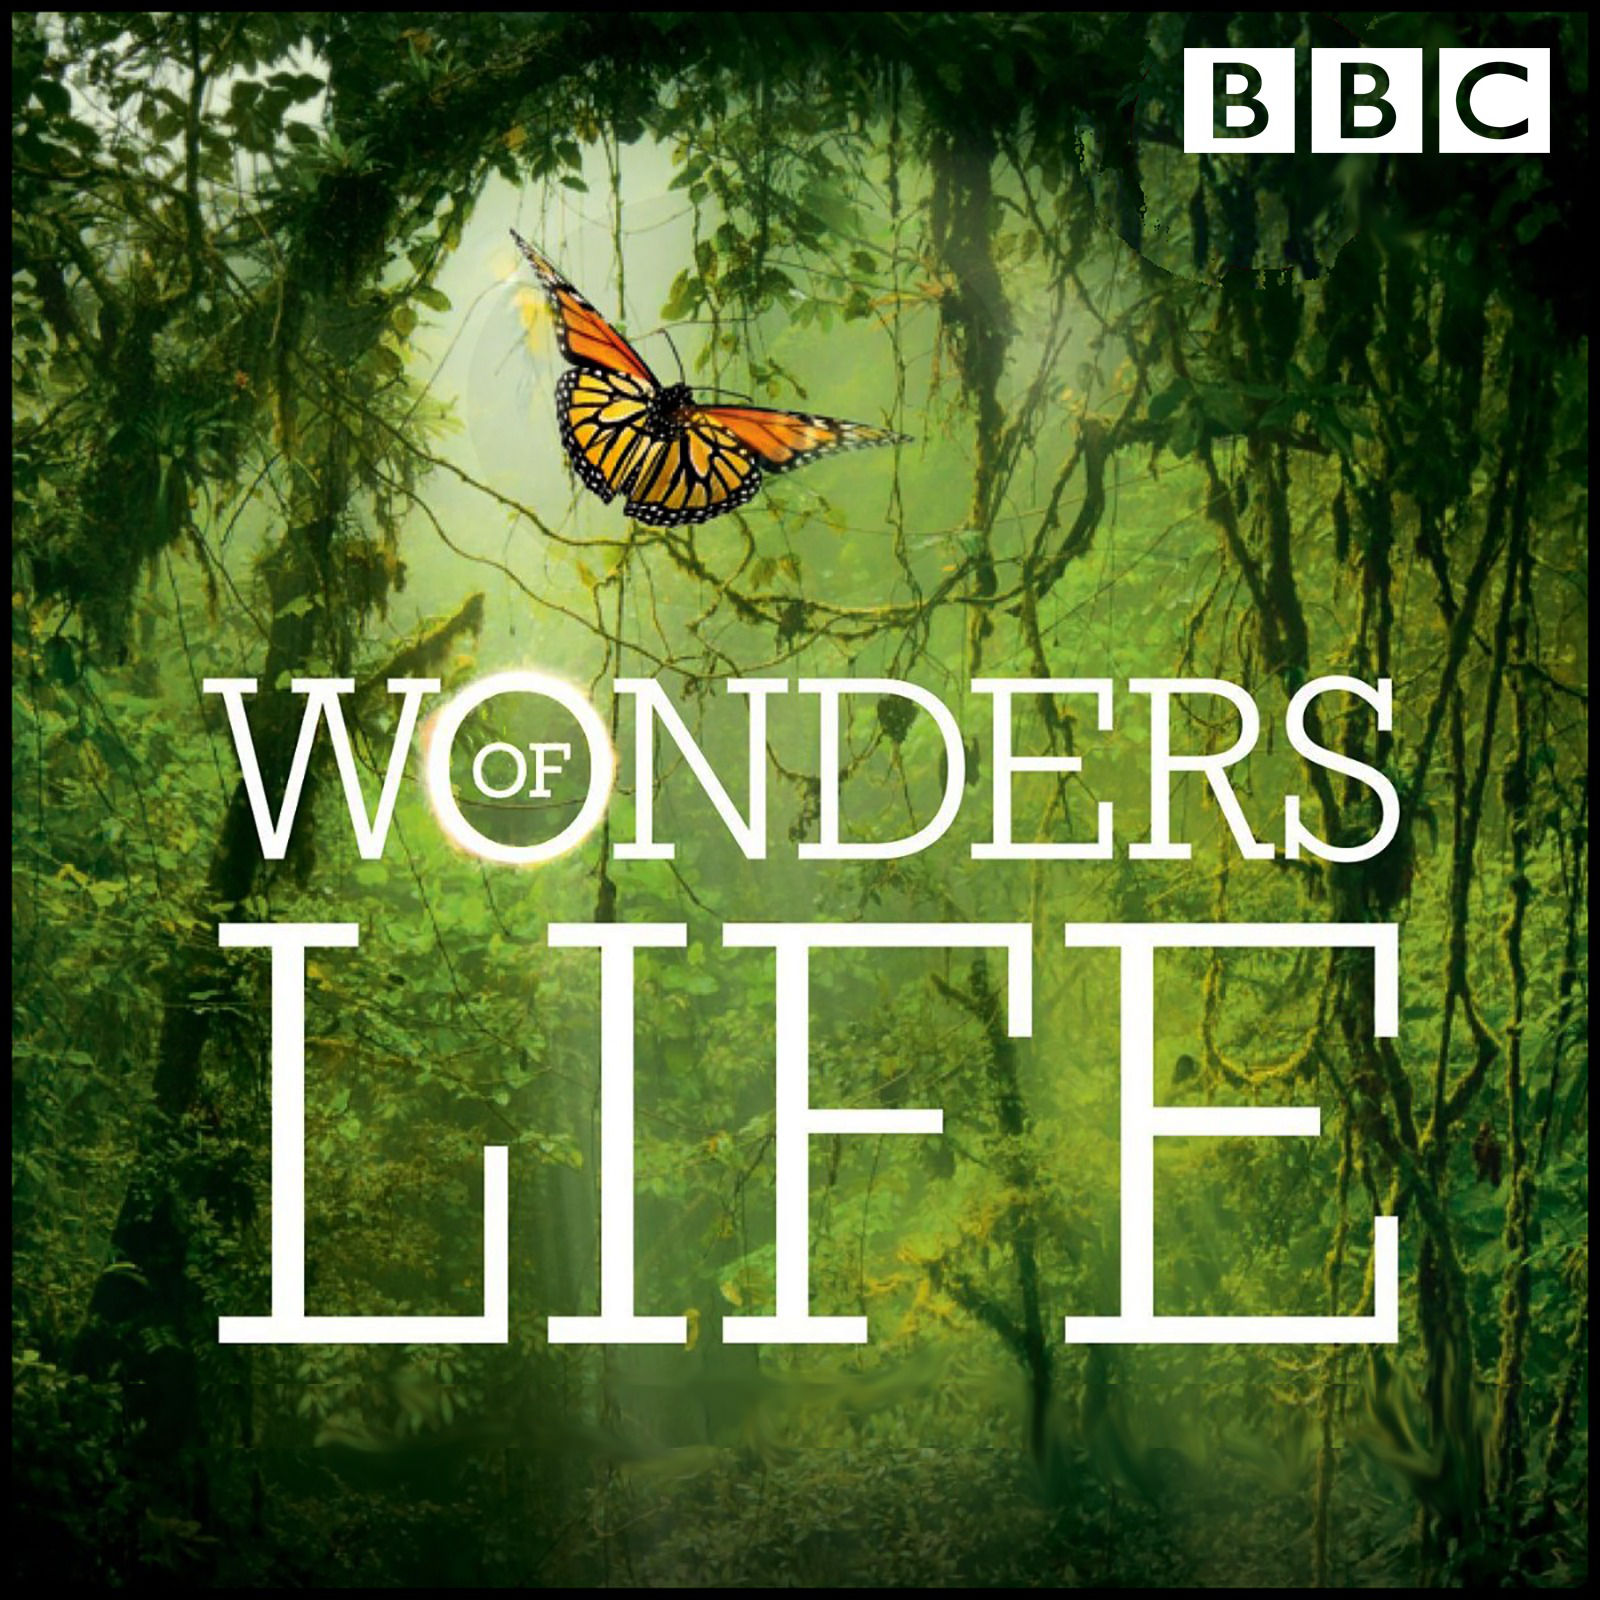 Life is wonder. Дэвид Швайтцер альбомы. Wonders of Life. Чудес в жизни. RMB - Wonders of Life.